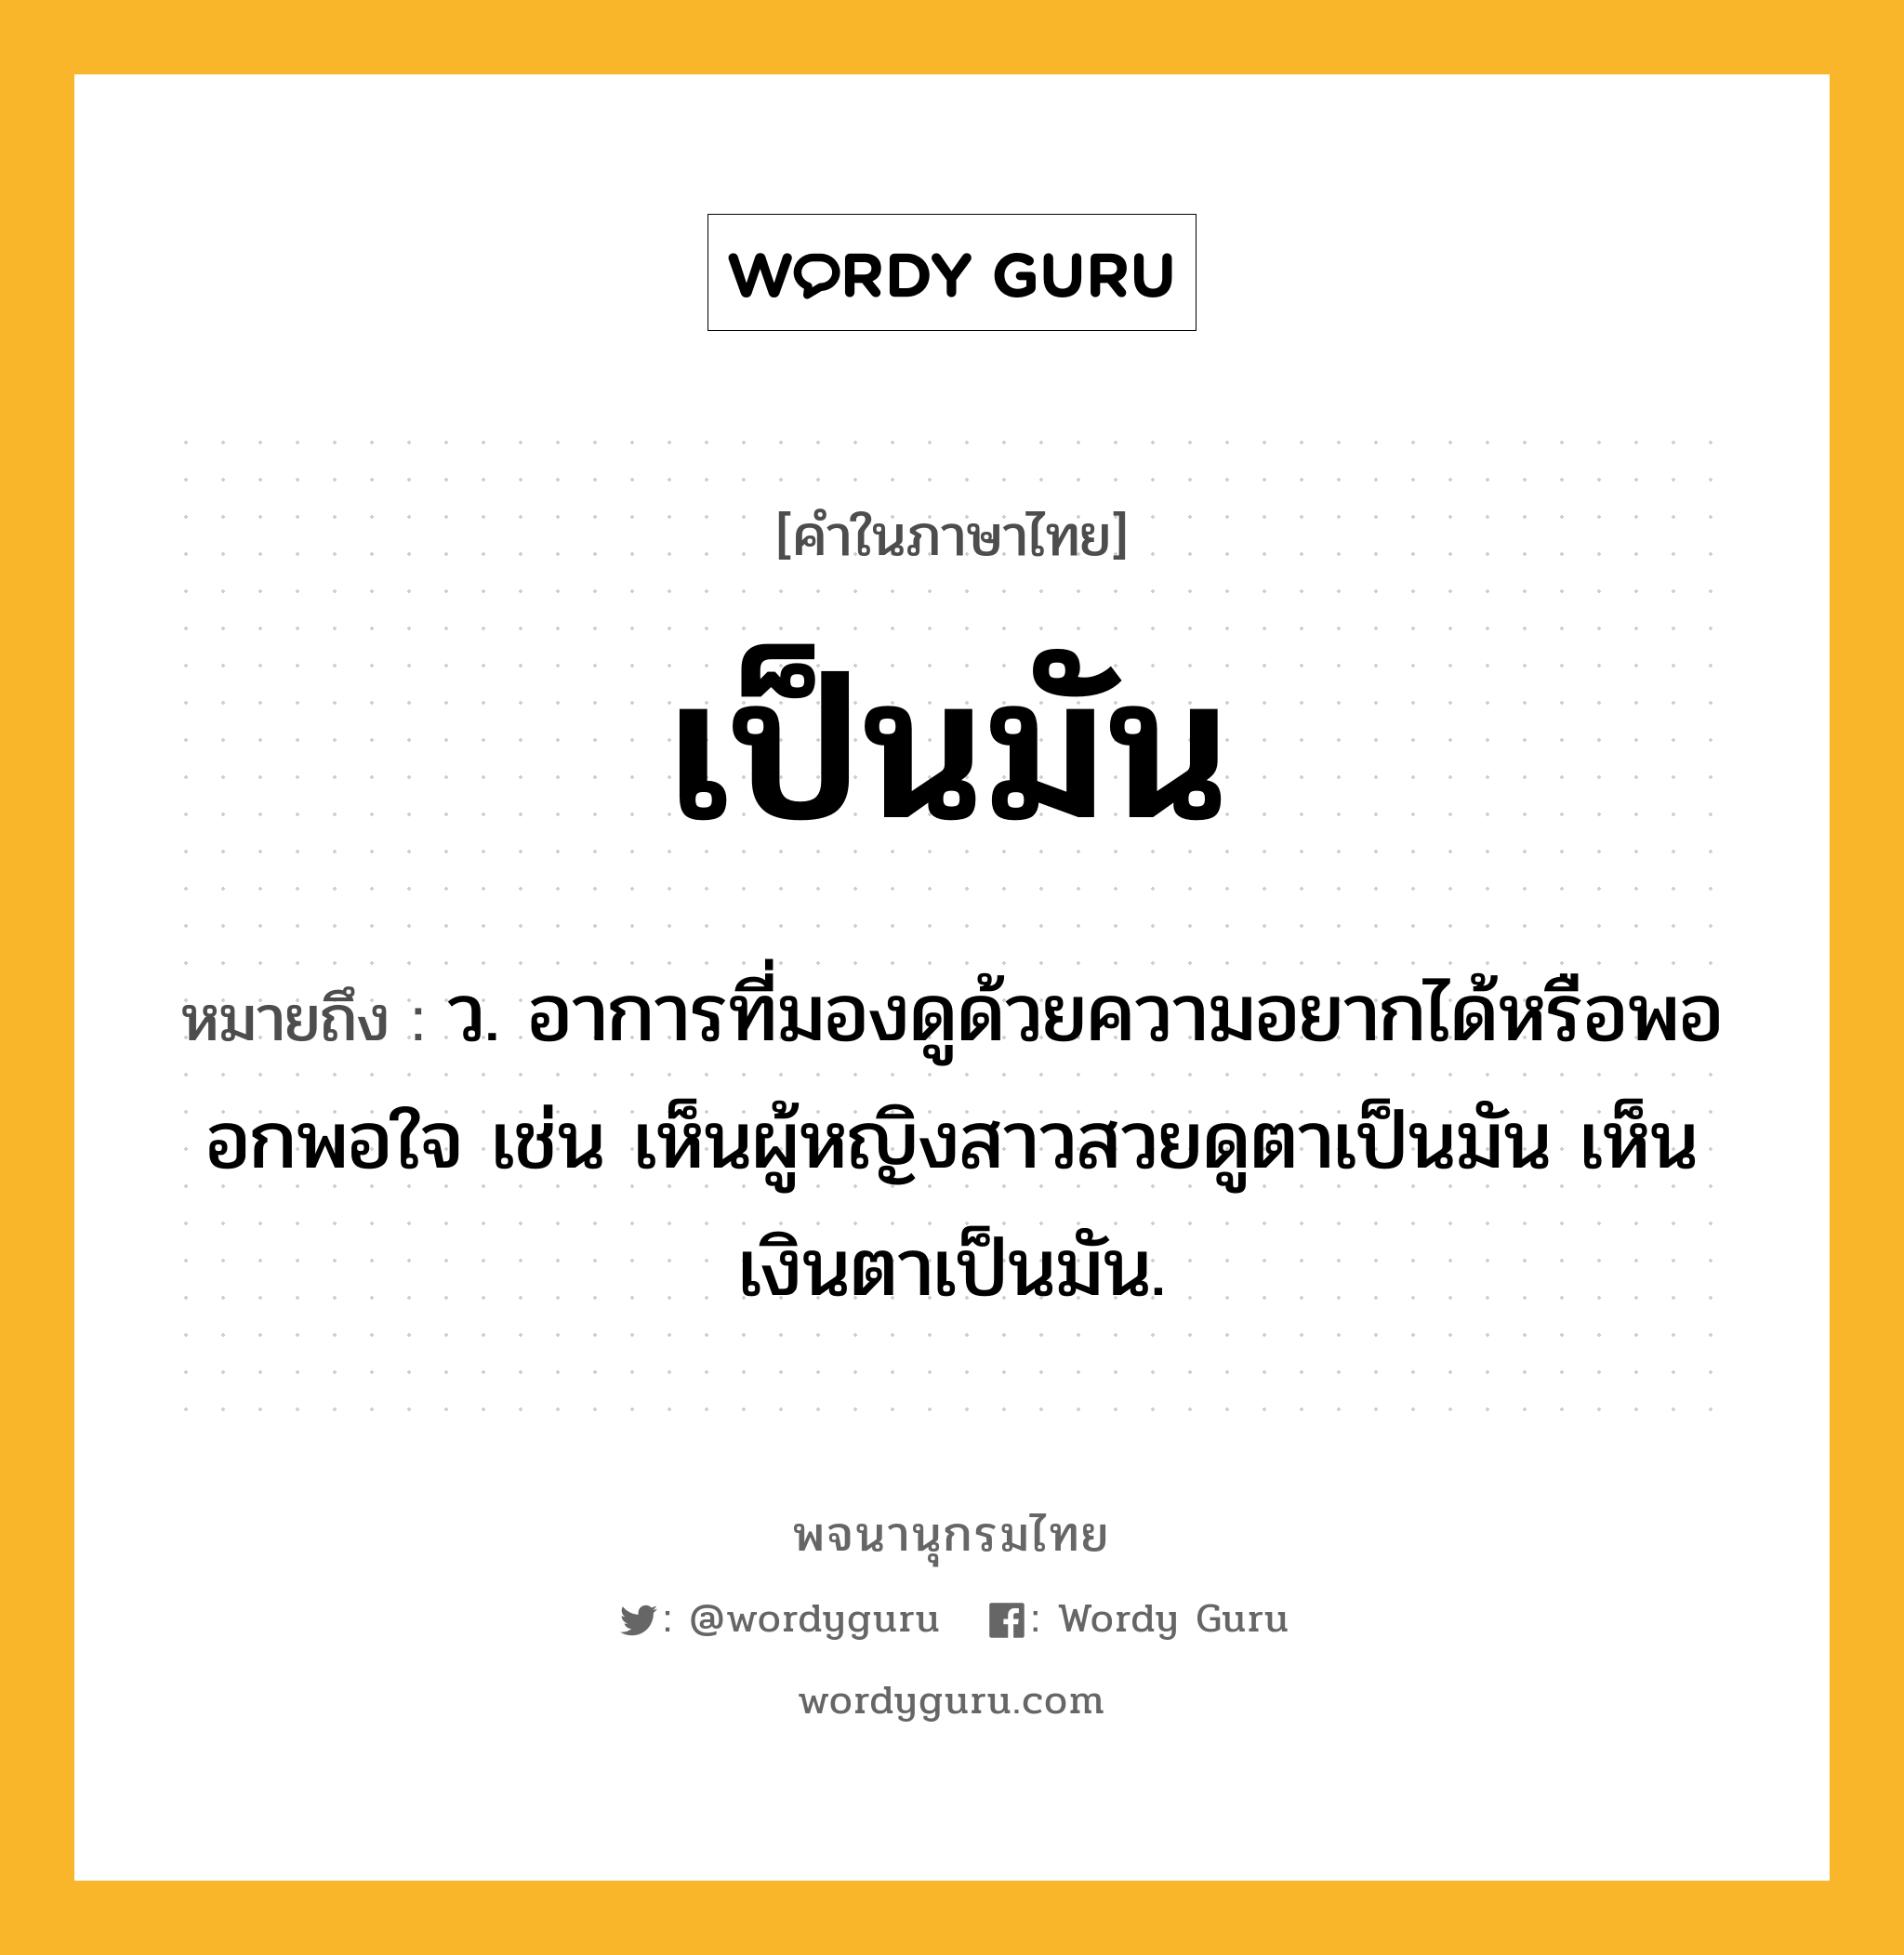 เป็นมัน ความหมาย หมายถึงอะไร?, คำในภาษาไทย เป็นมัน หมายถึง ว. อาการที่มองดูด้วยความอยากได้หรือพออกพอใจ เช่น เห็นผู้หญิงสาวสวยดูตาเป็นมัน เห็นเงินตาเป็นมัน.